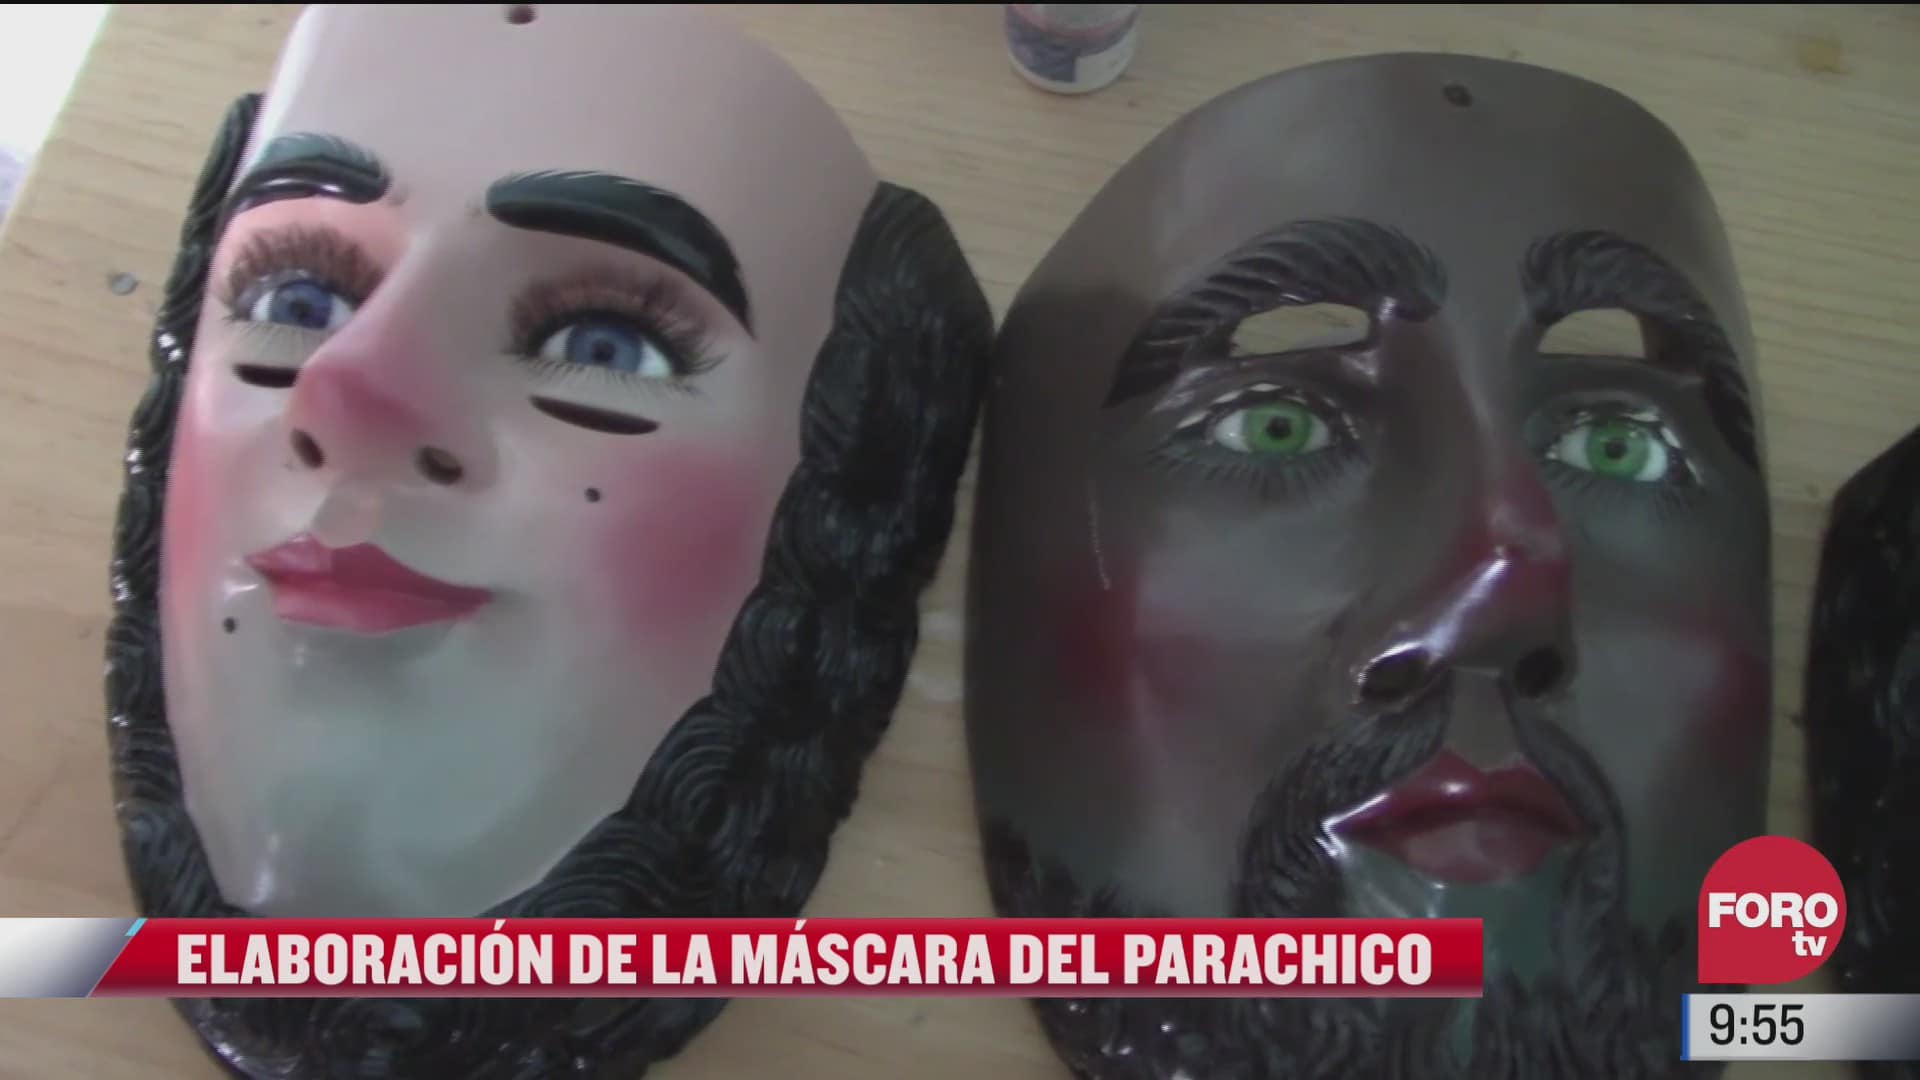 mascara de parachico una tradicion de mas de tres siglos